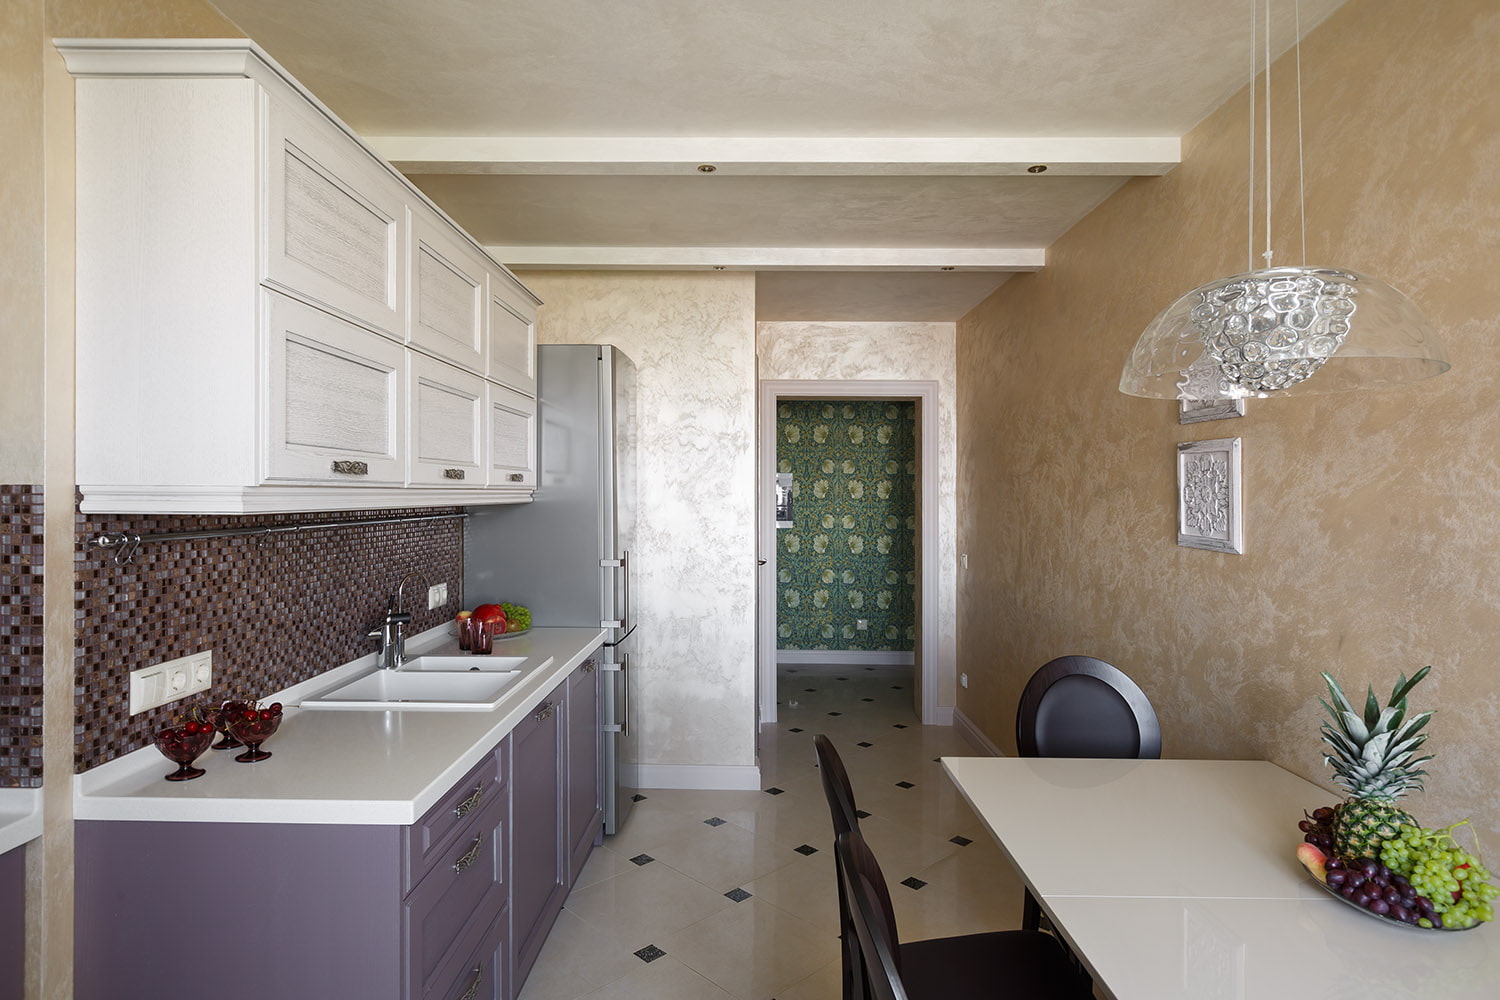 Отделка стен кухни современные идеи: декоративная штукатурка, обоями, панелями, камнем, плиткой. отделка стен на кухне, современные варианты. современная кухня, отделка стен